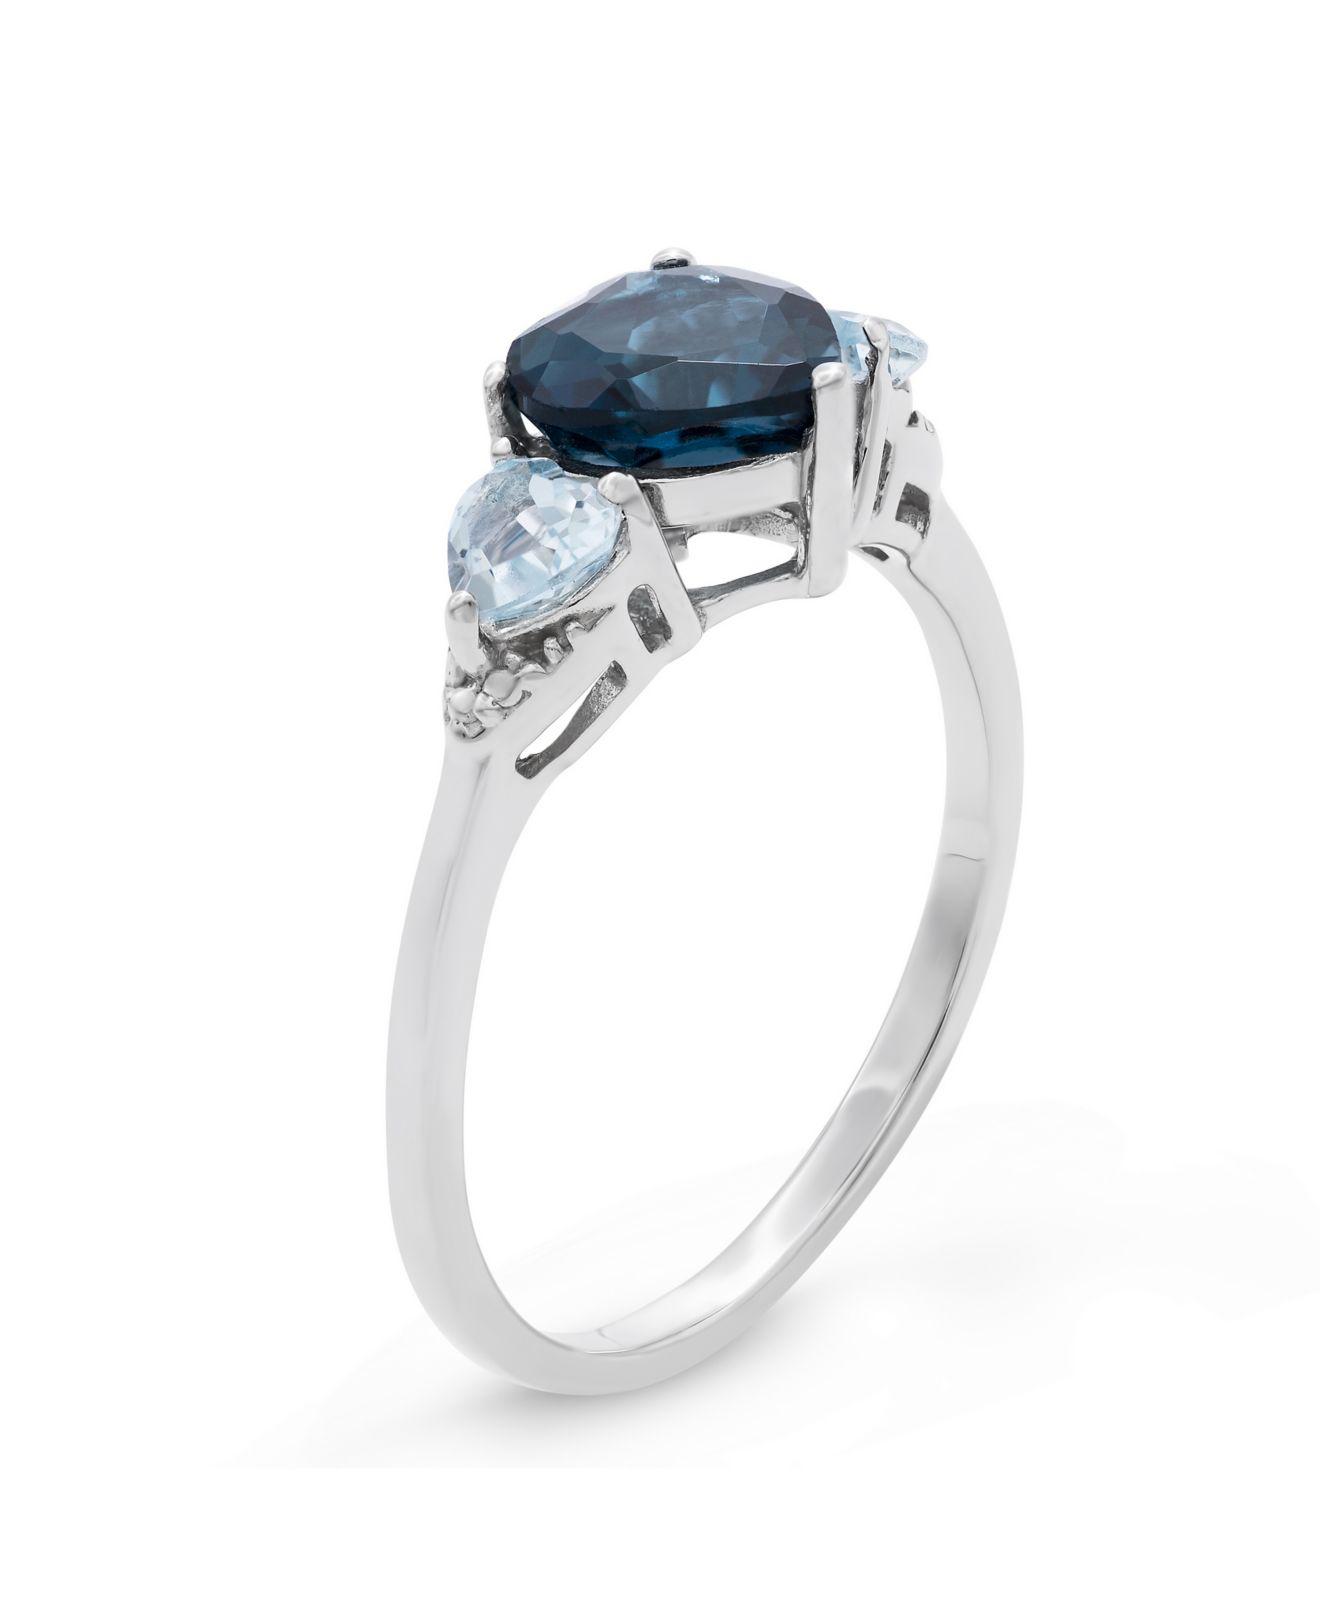 Lyst - Macy's Sterling Silver London Blue Ring in Blue